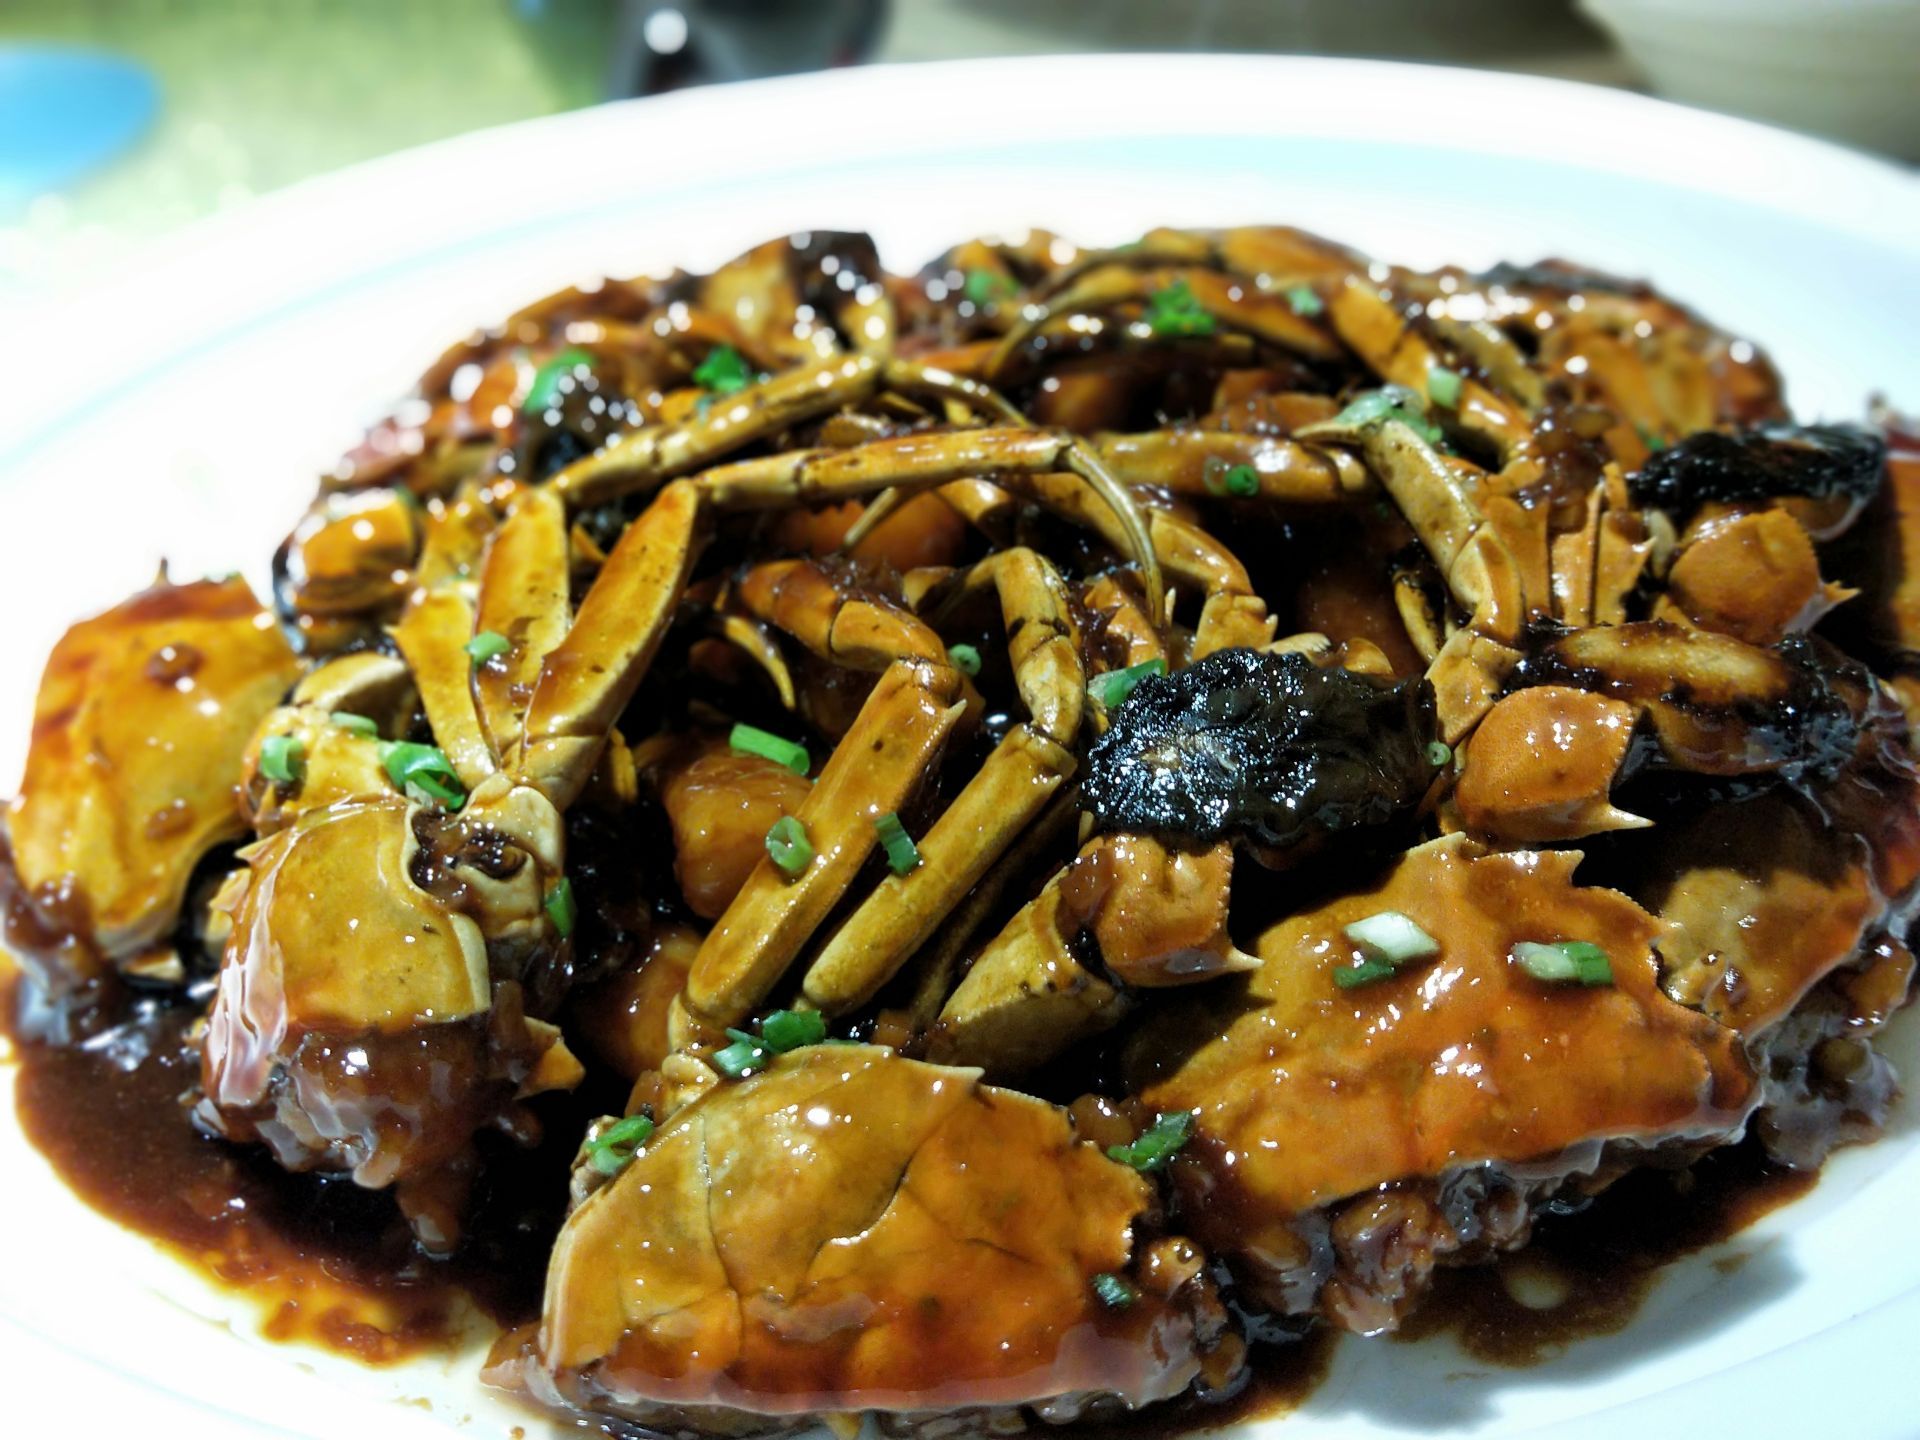 专门做上海菜的餐厅,个人认为这里的性价比属于很高的,好吃又实惠,在